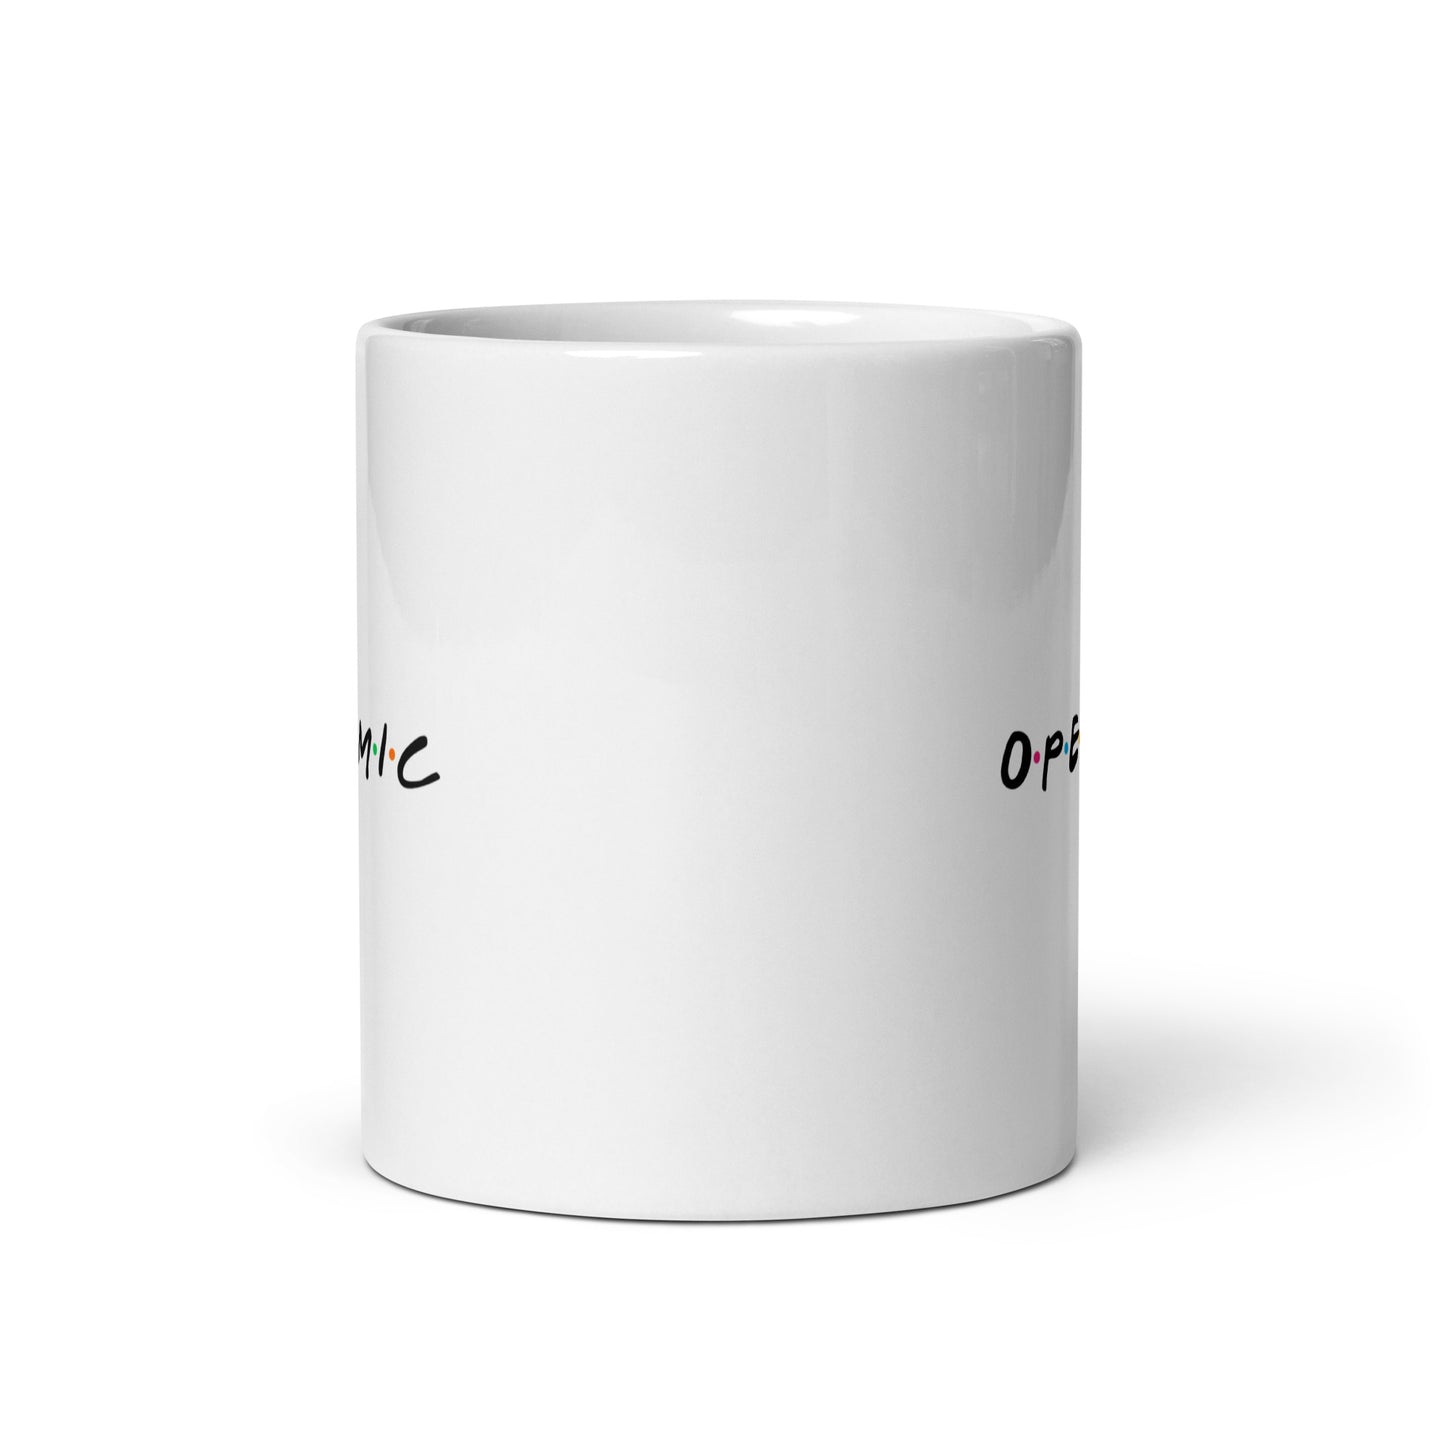 Open Mic Ceramic Mug - 11 fl oz (Paperback)